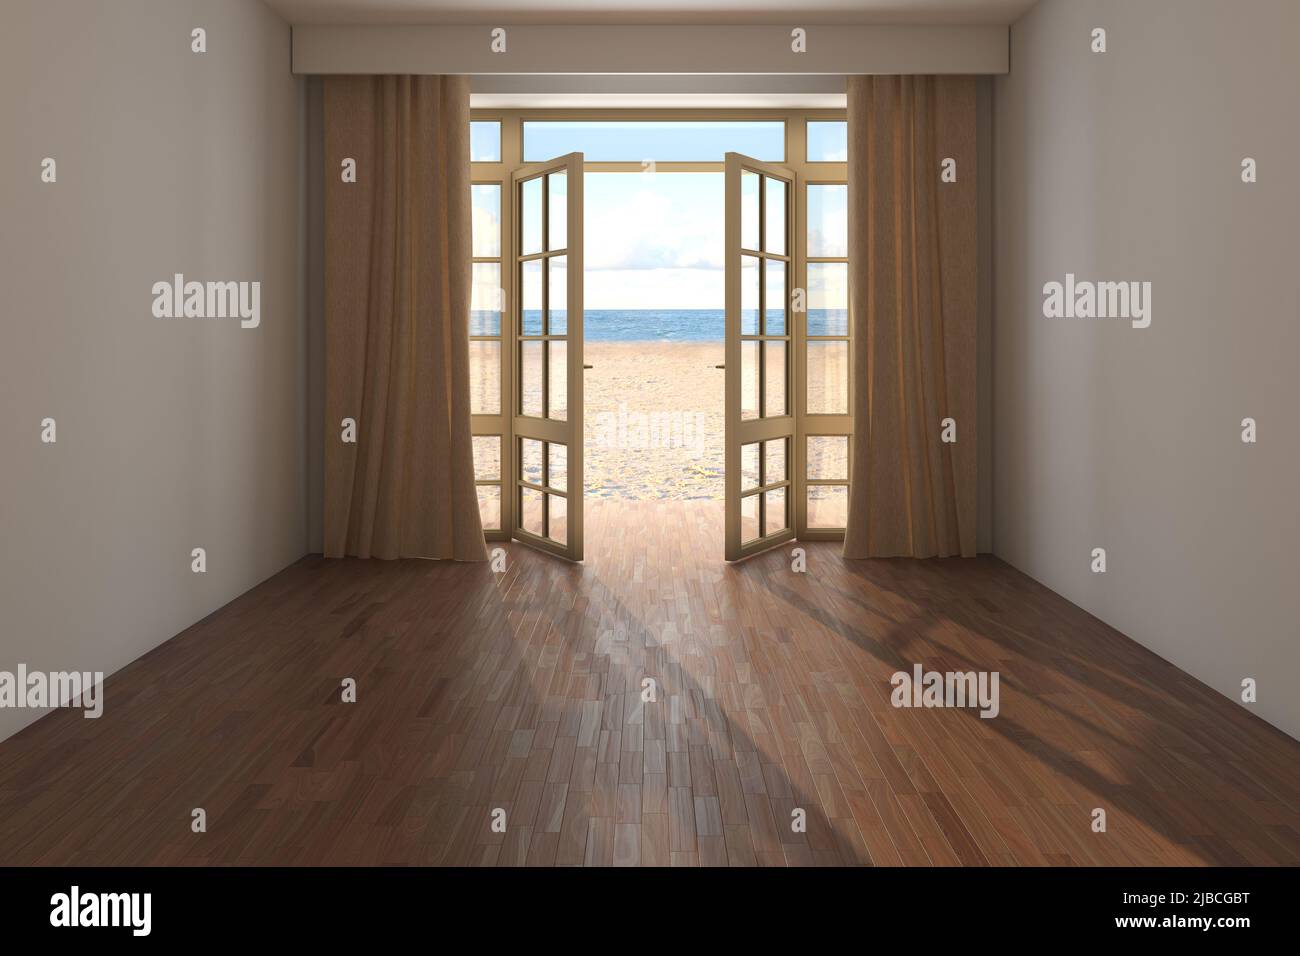 Chambre d'hôtel non meublée avec vue sur la mer près de la plage. Intérieur avec porte ouverte donnant sur l'océan, rideaux beige, sable jaune et nuages. Parquet sombre et murs en stuc beige. 3D rendu Banque D'Images